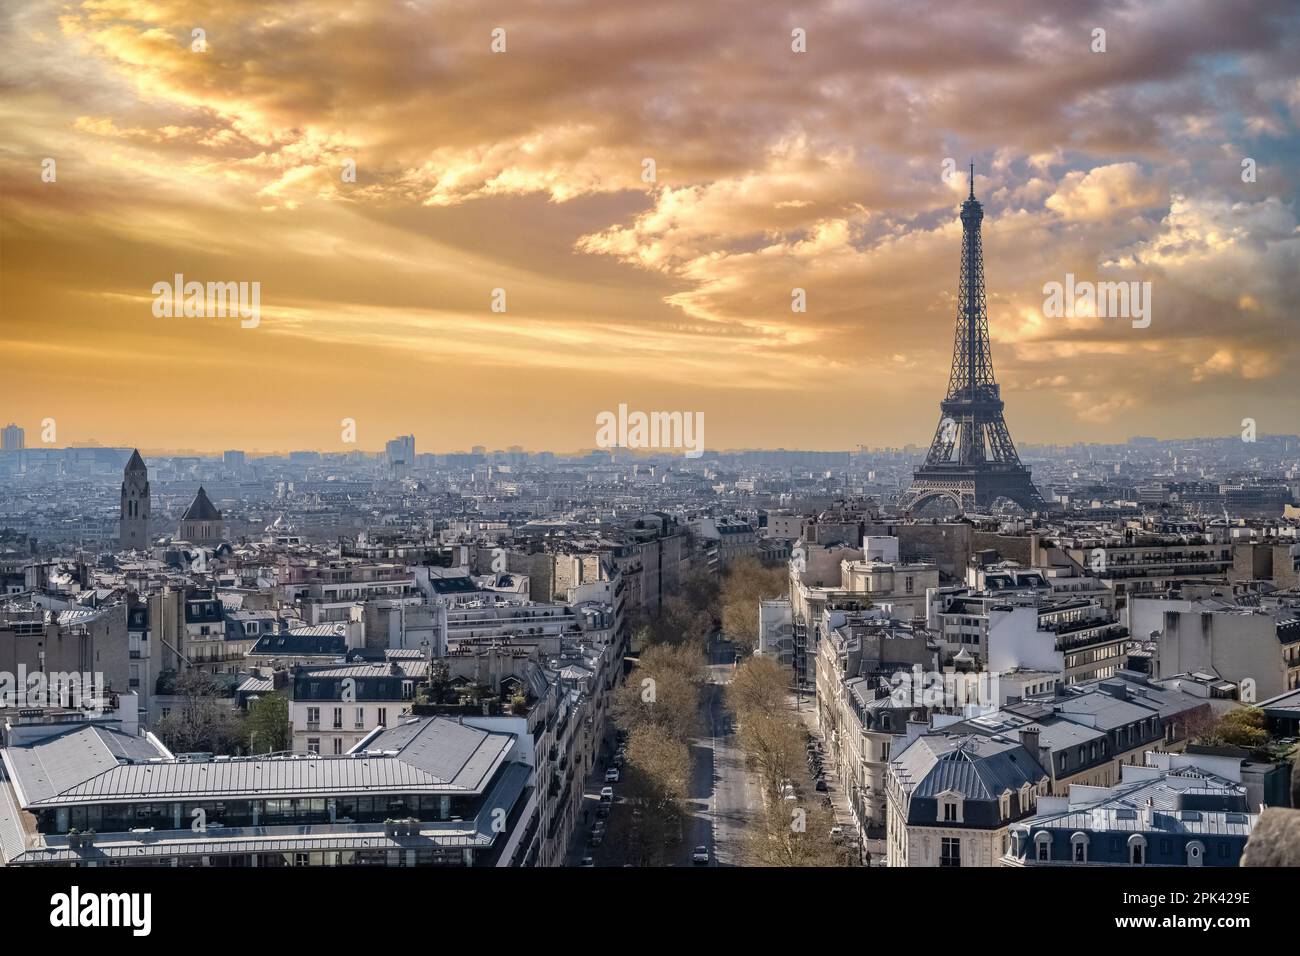 Paris, magnifiques façades et toits Haussmann dans un quartier luxueux de la capitale, vue de l'arche du triomphe, avec la Tour Eiffel Banque D'Images